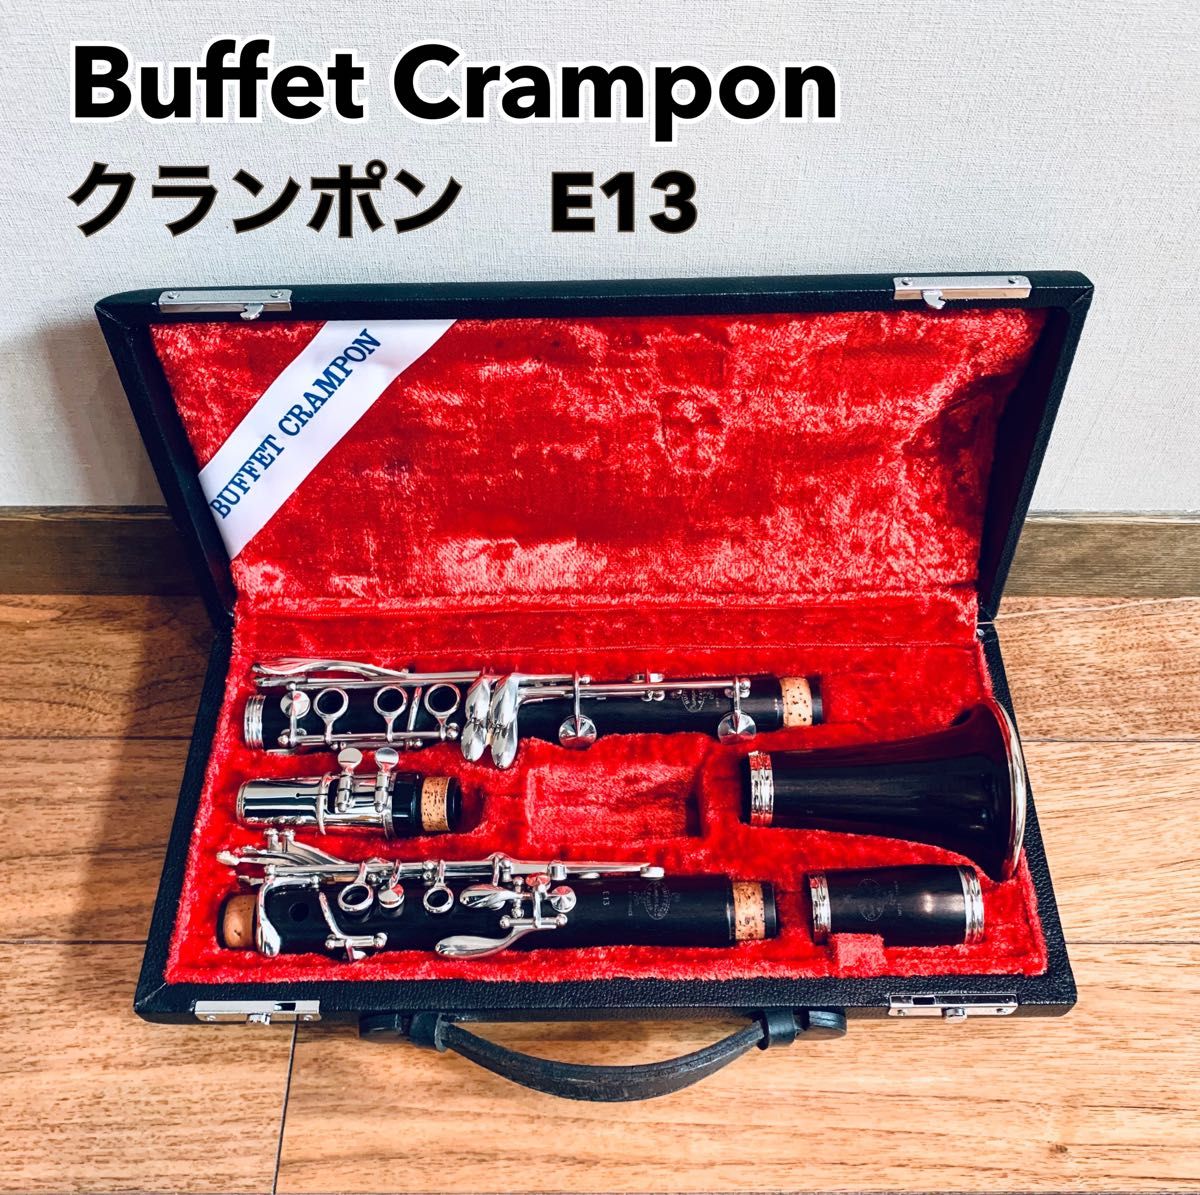 Buffet Crampon ビュッフェ クランポン クラリネット E13